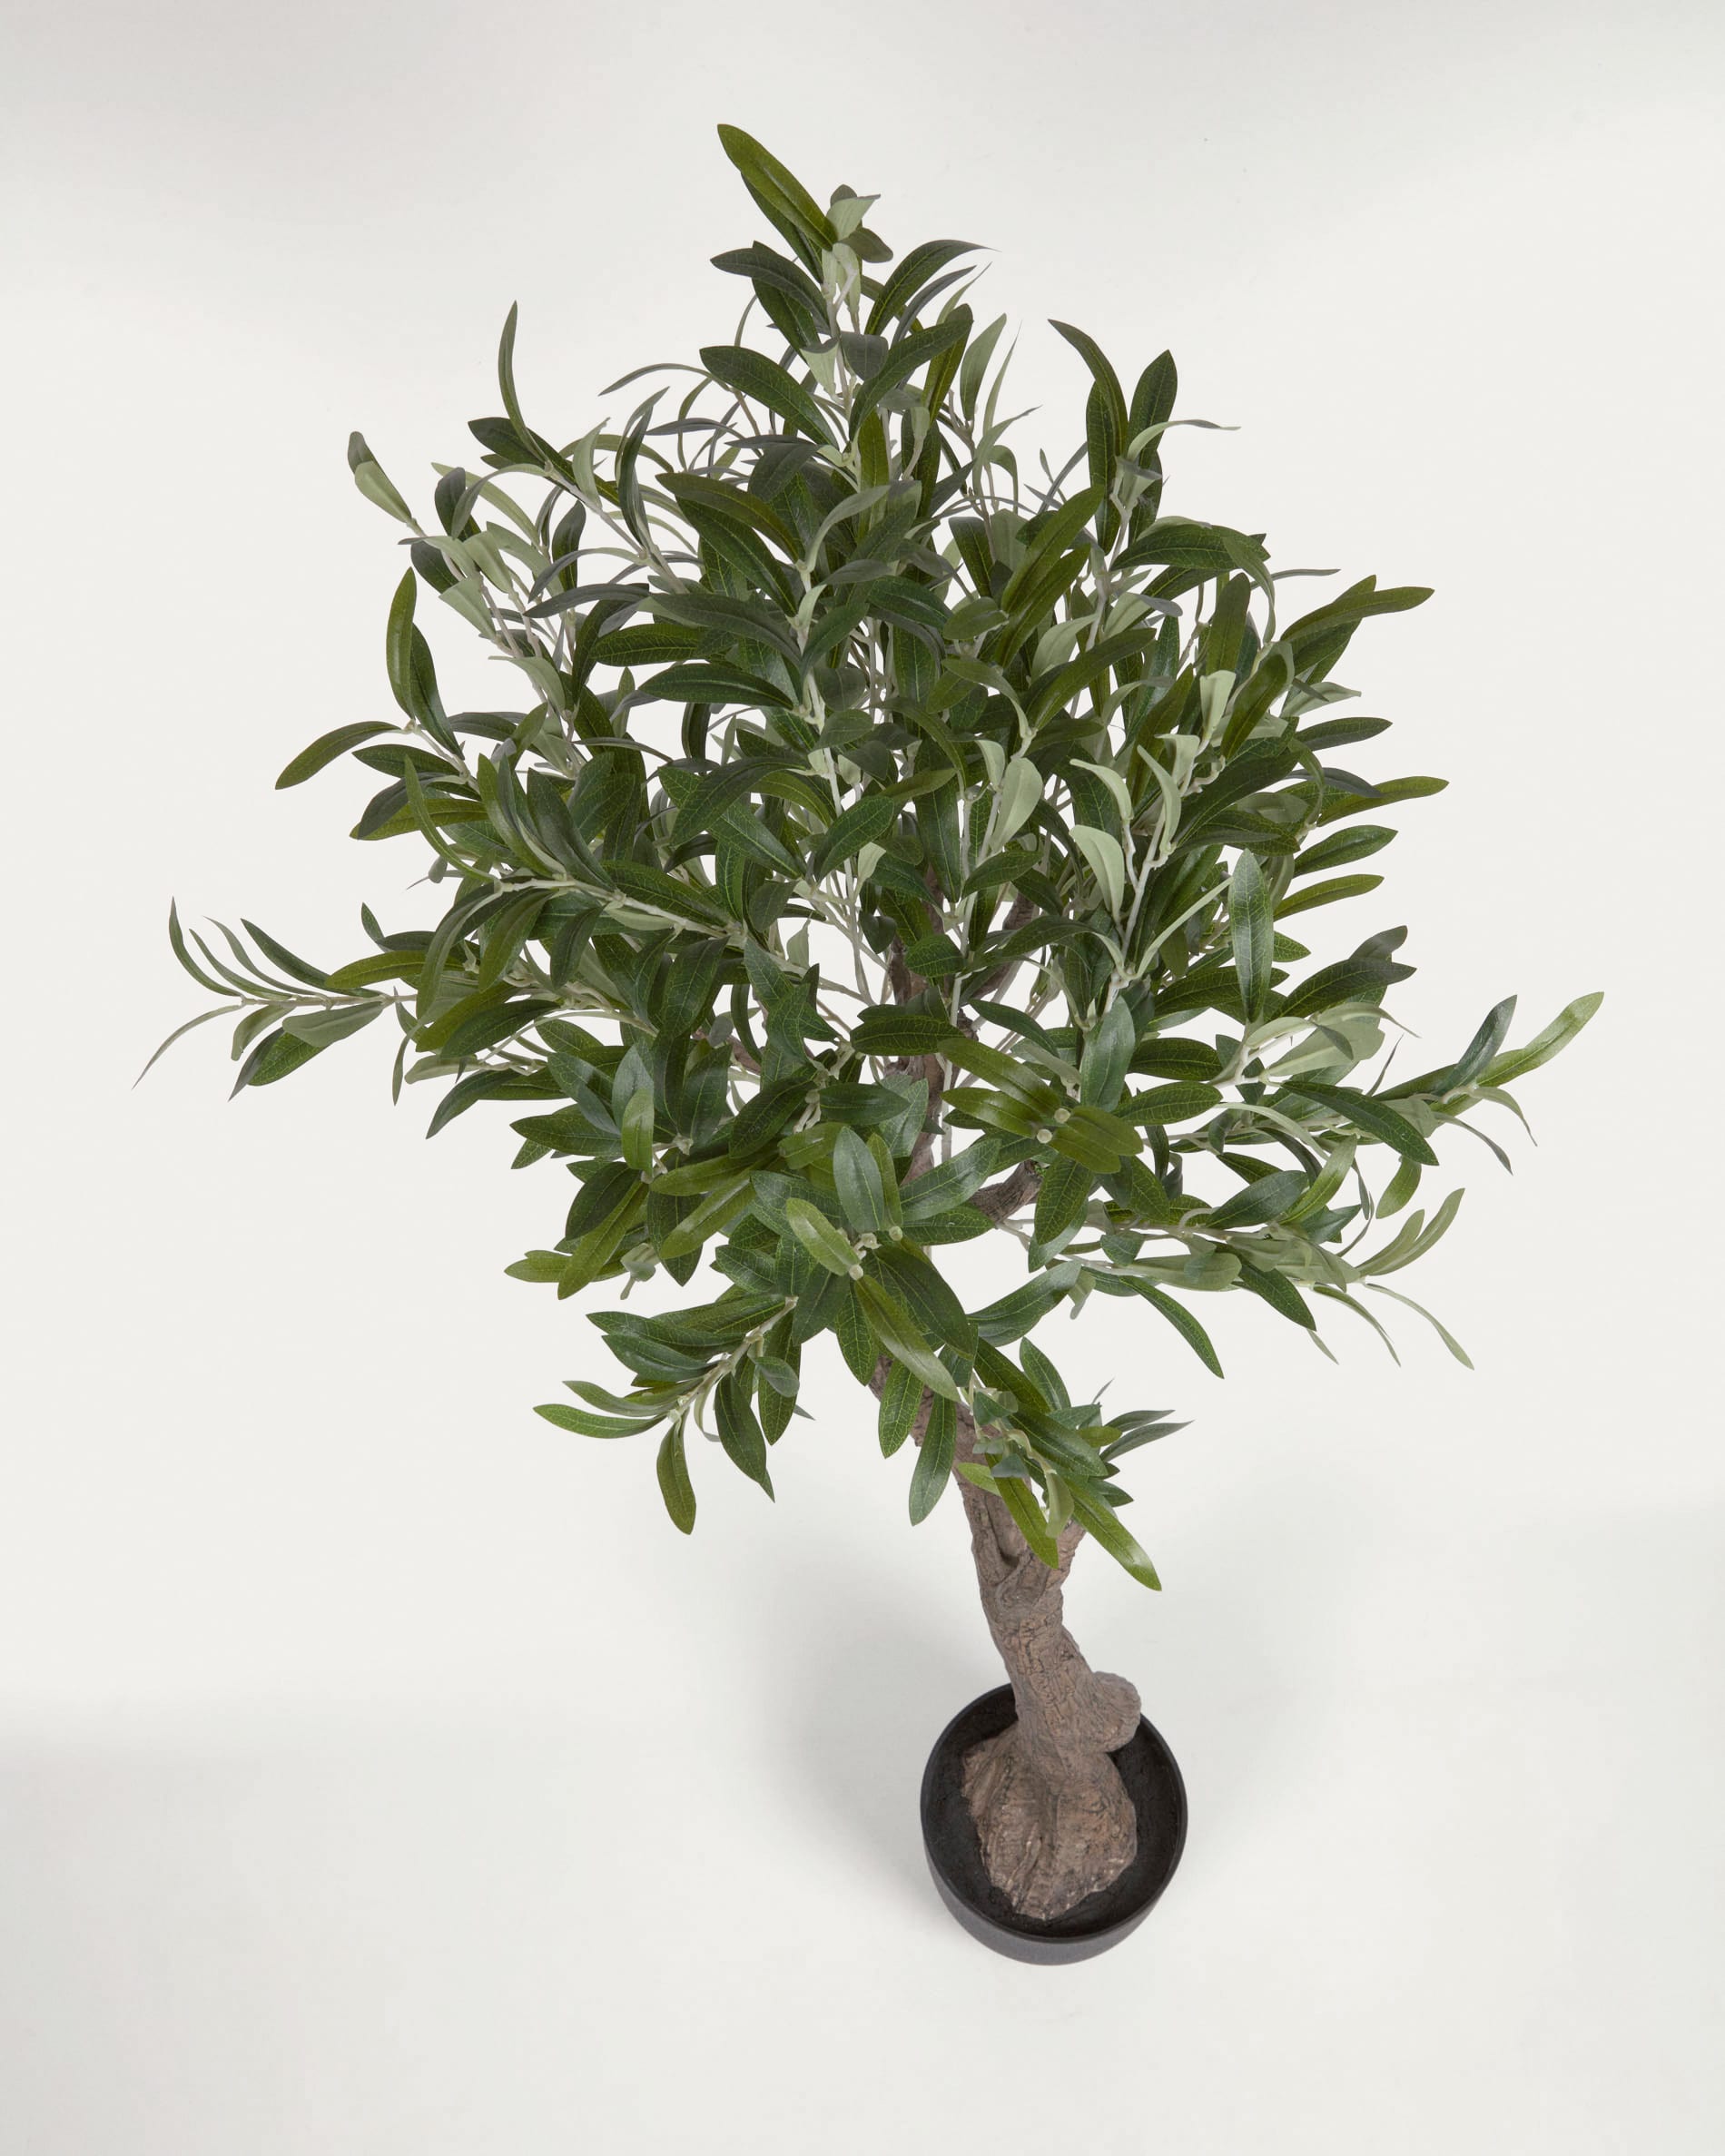 Planta Olivo con maceta h120cm